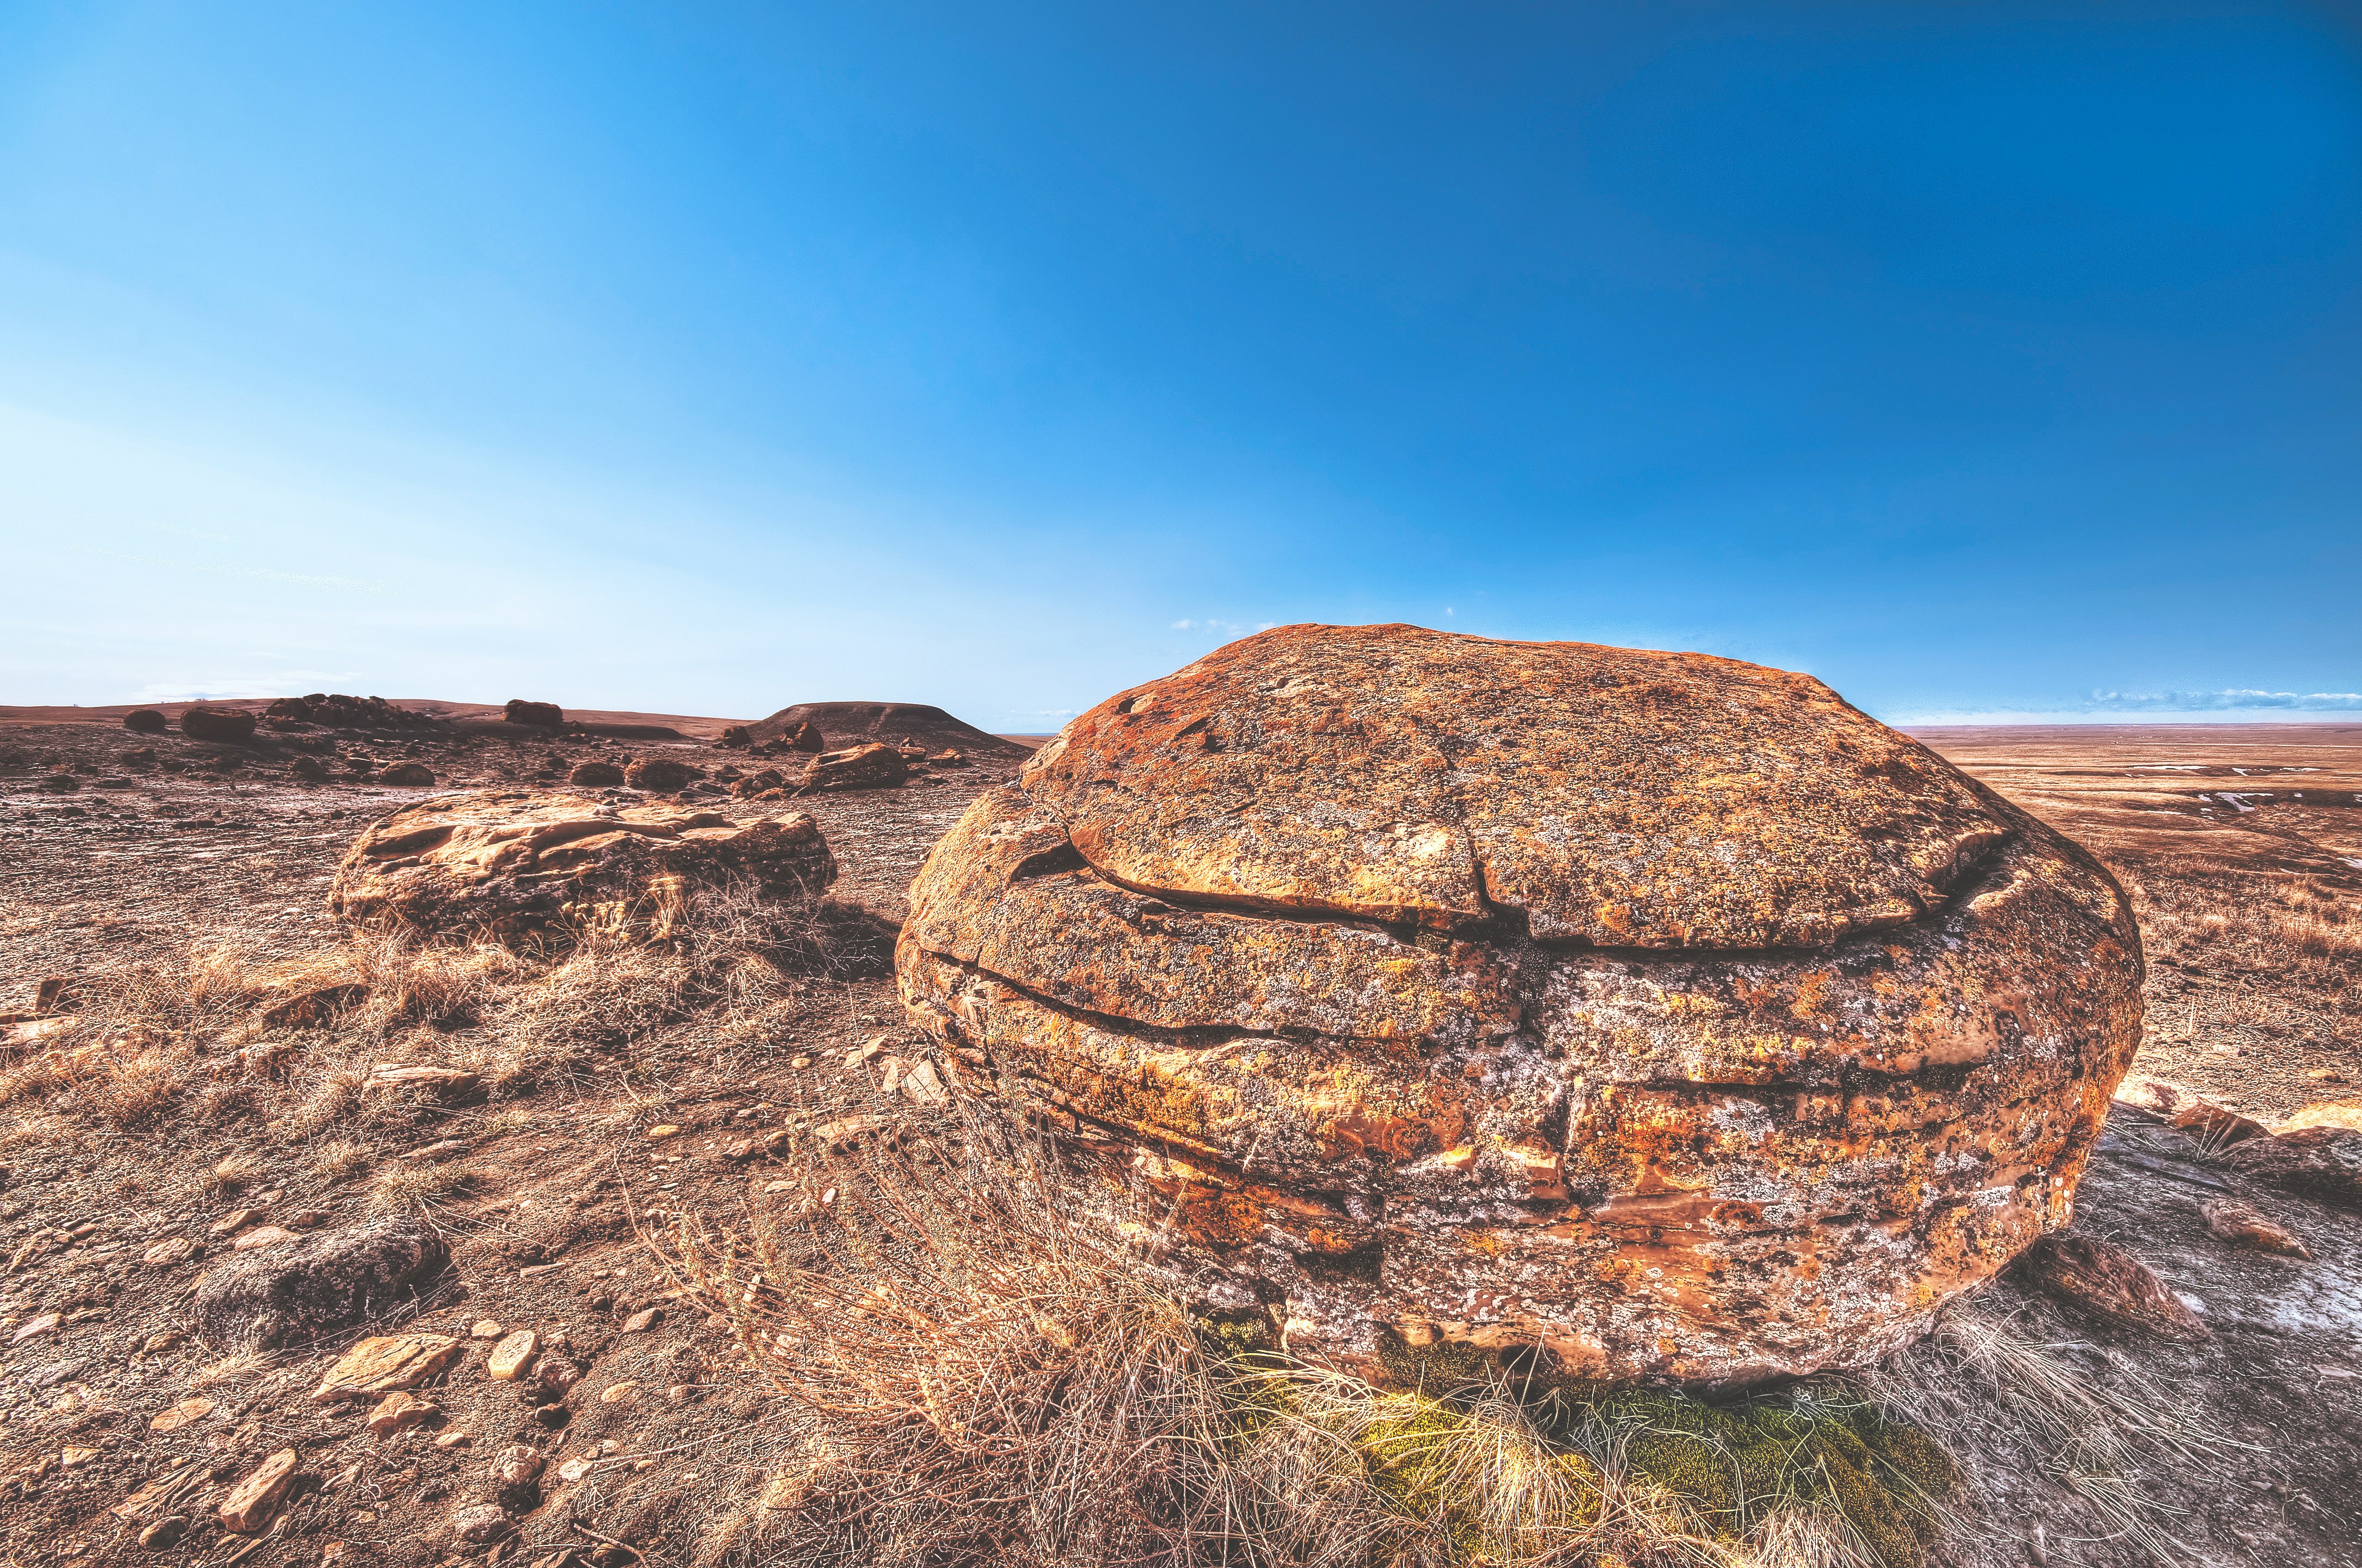 brown rock on deserted land under blue sky during daytime